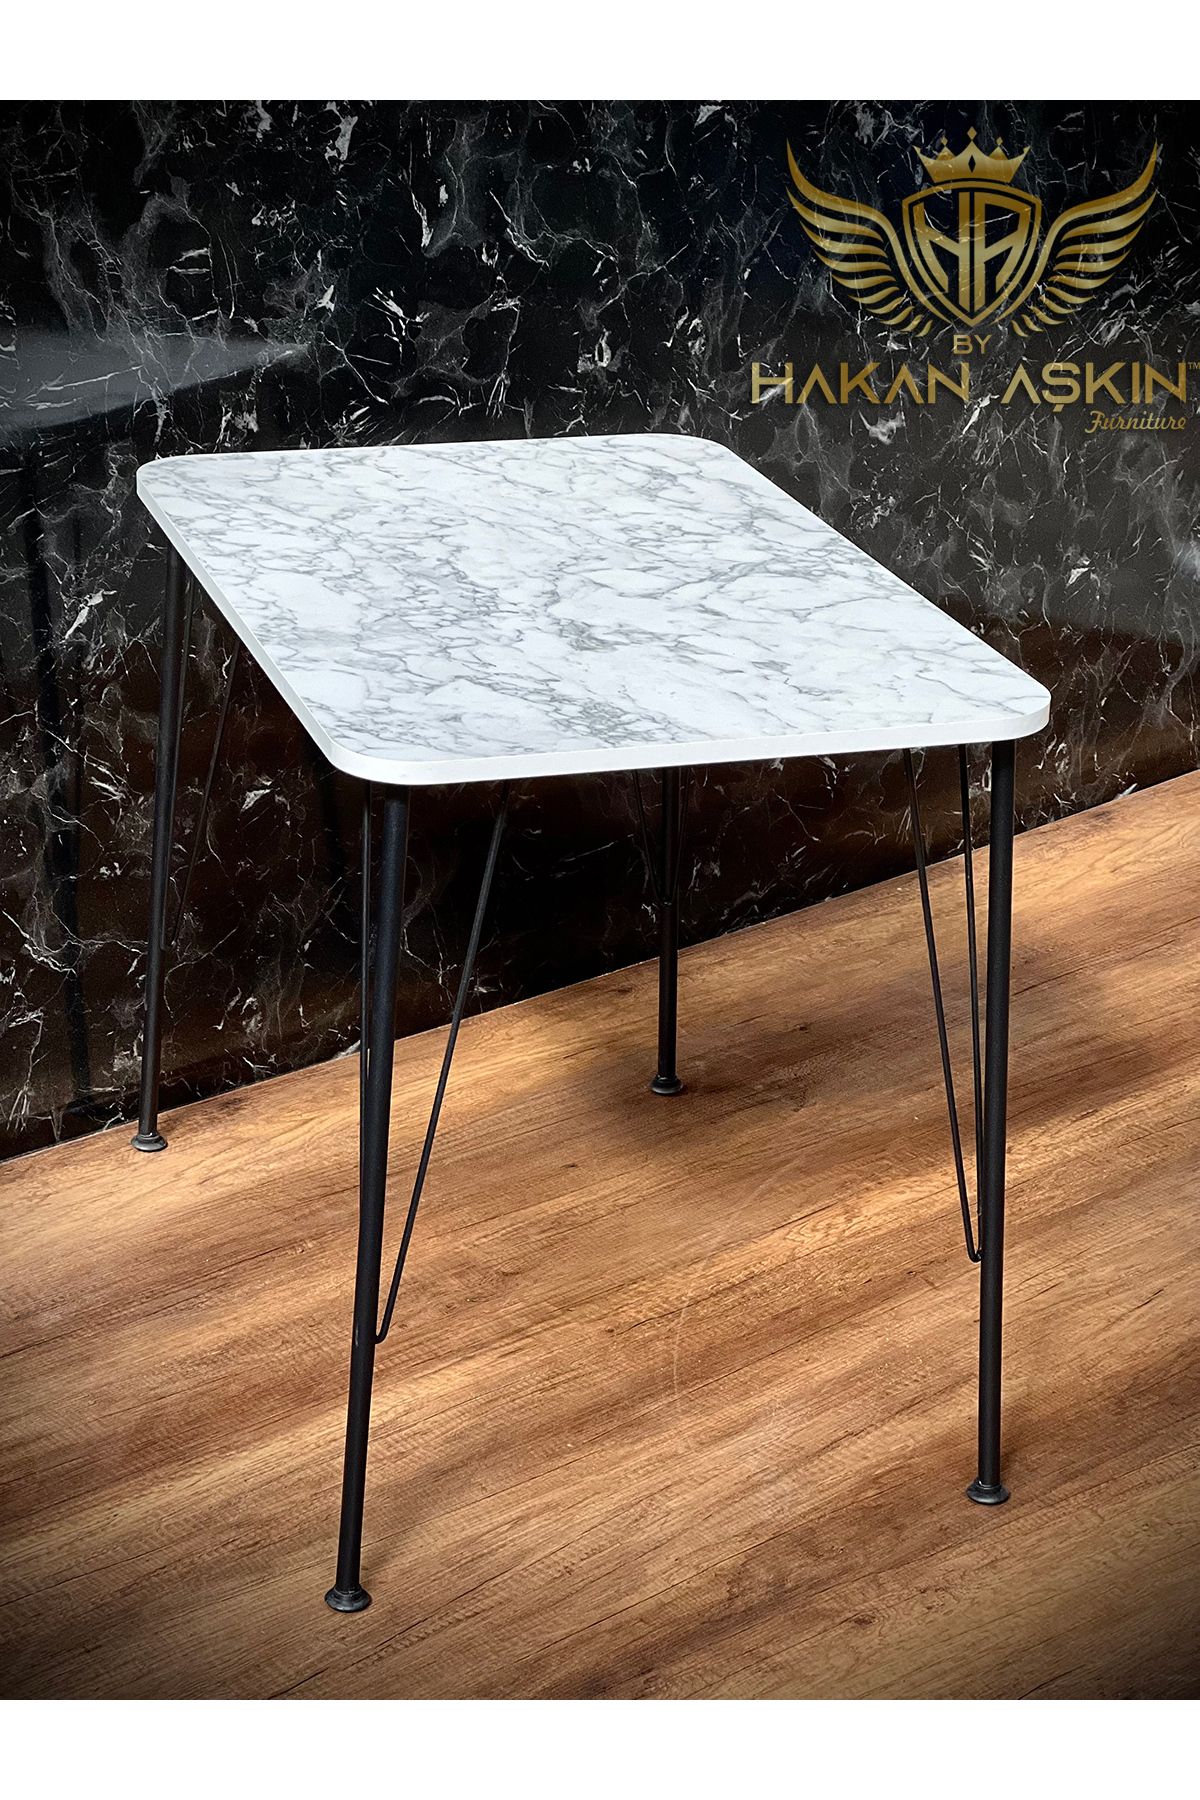 BY HAKAN AŞKIN Siyah Metal Ayaklı 60x90 Cm (tek Masa) Parlak White Marble 2023 Mutfak - Balkon - Çalışma Masası